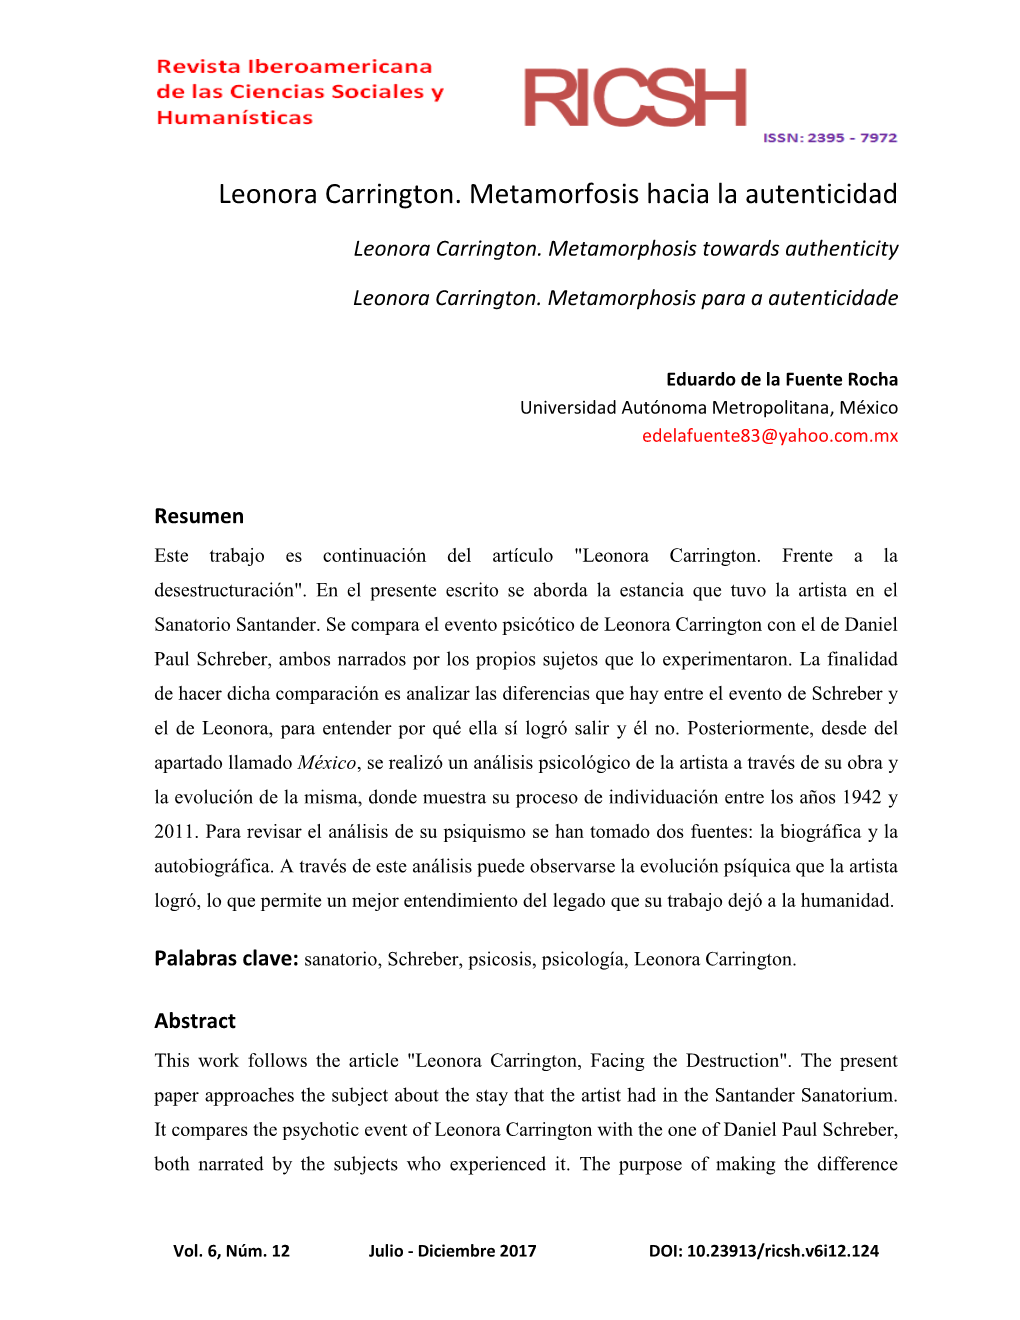 Leonora Carrington. Metamorfosis Hacia La Autenticidad